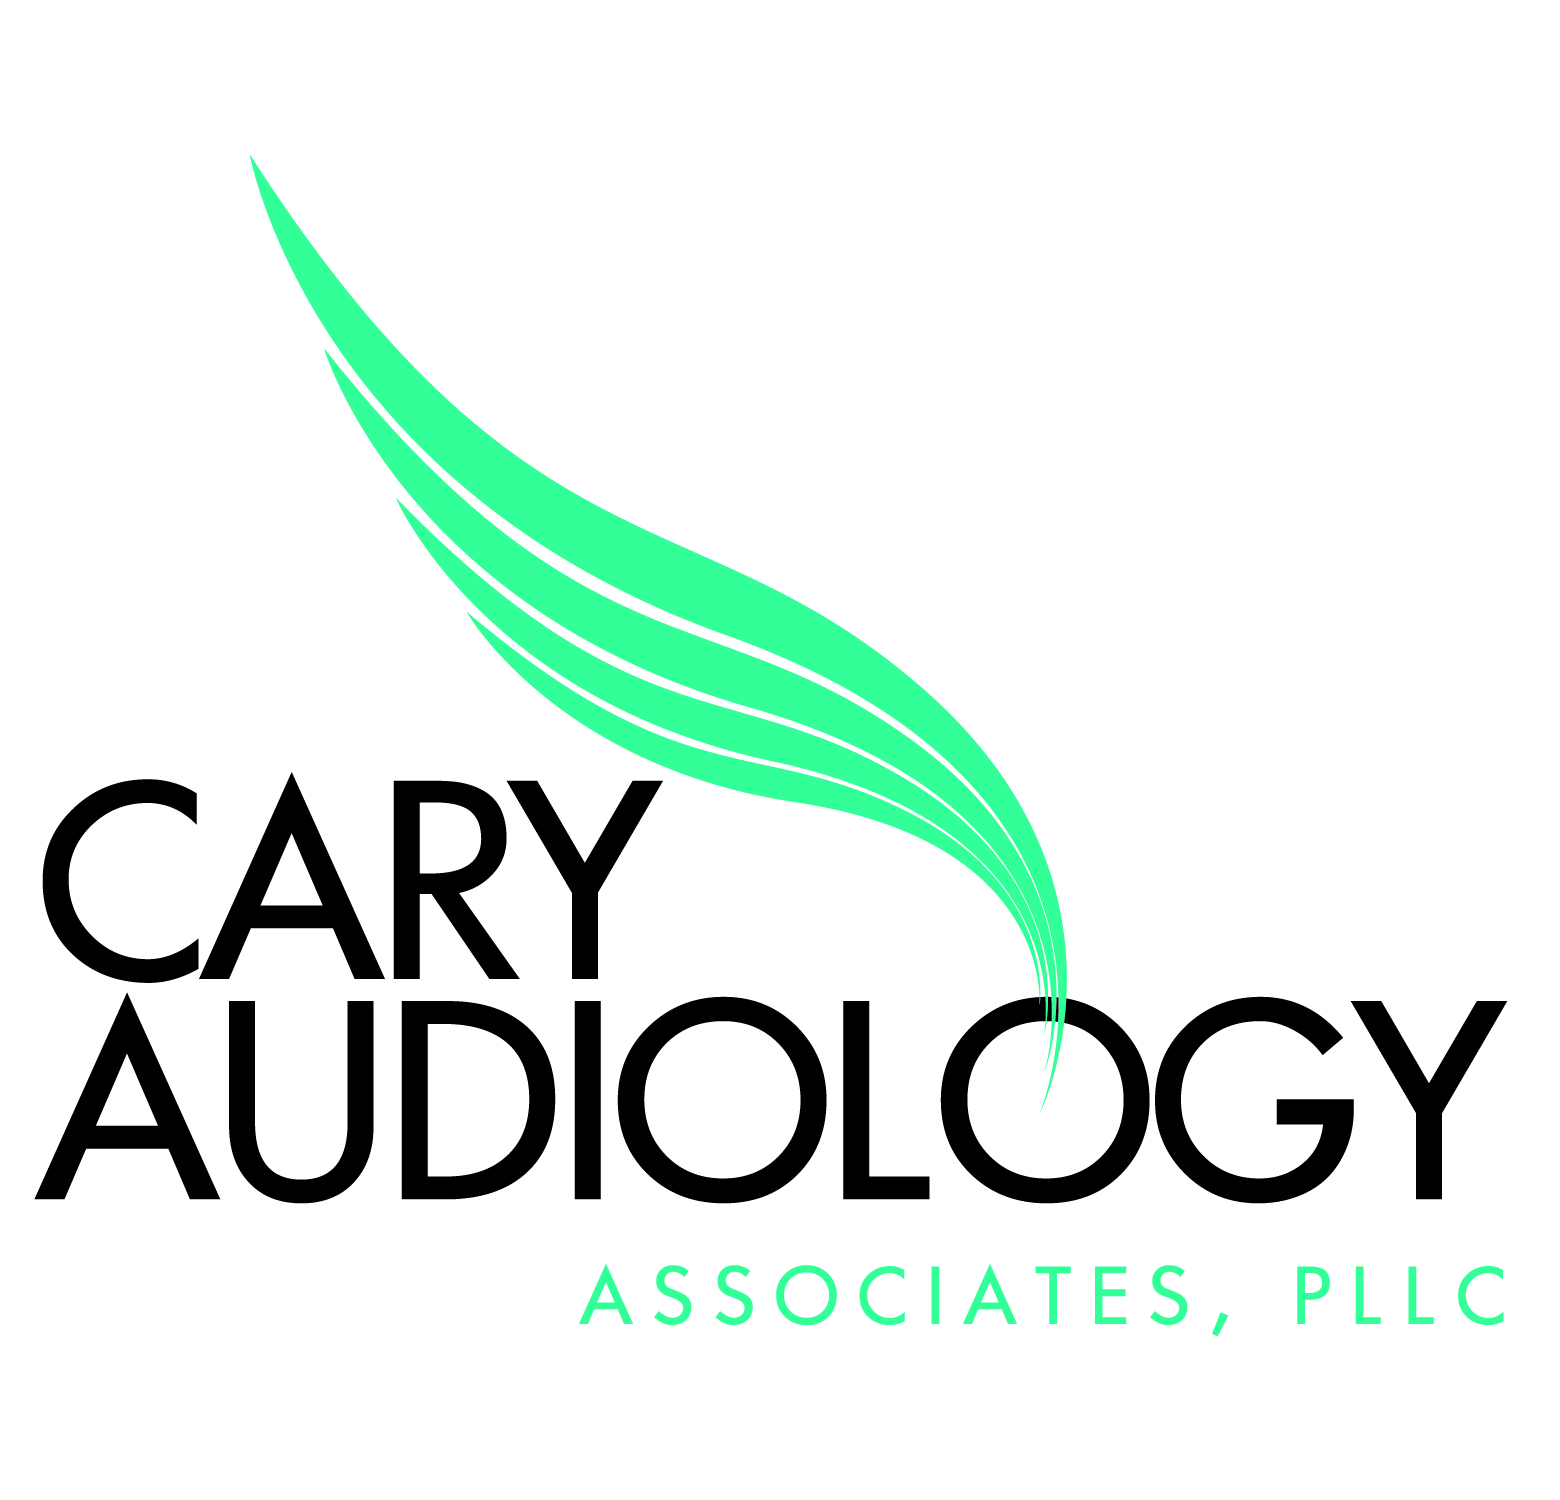 Cary Audiology Associates, PLLC